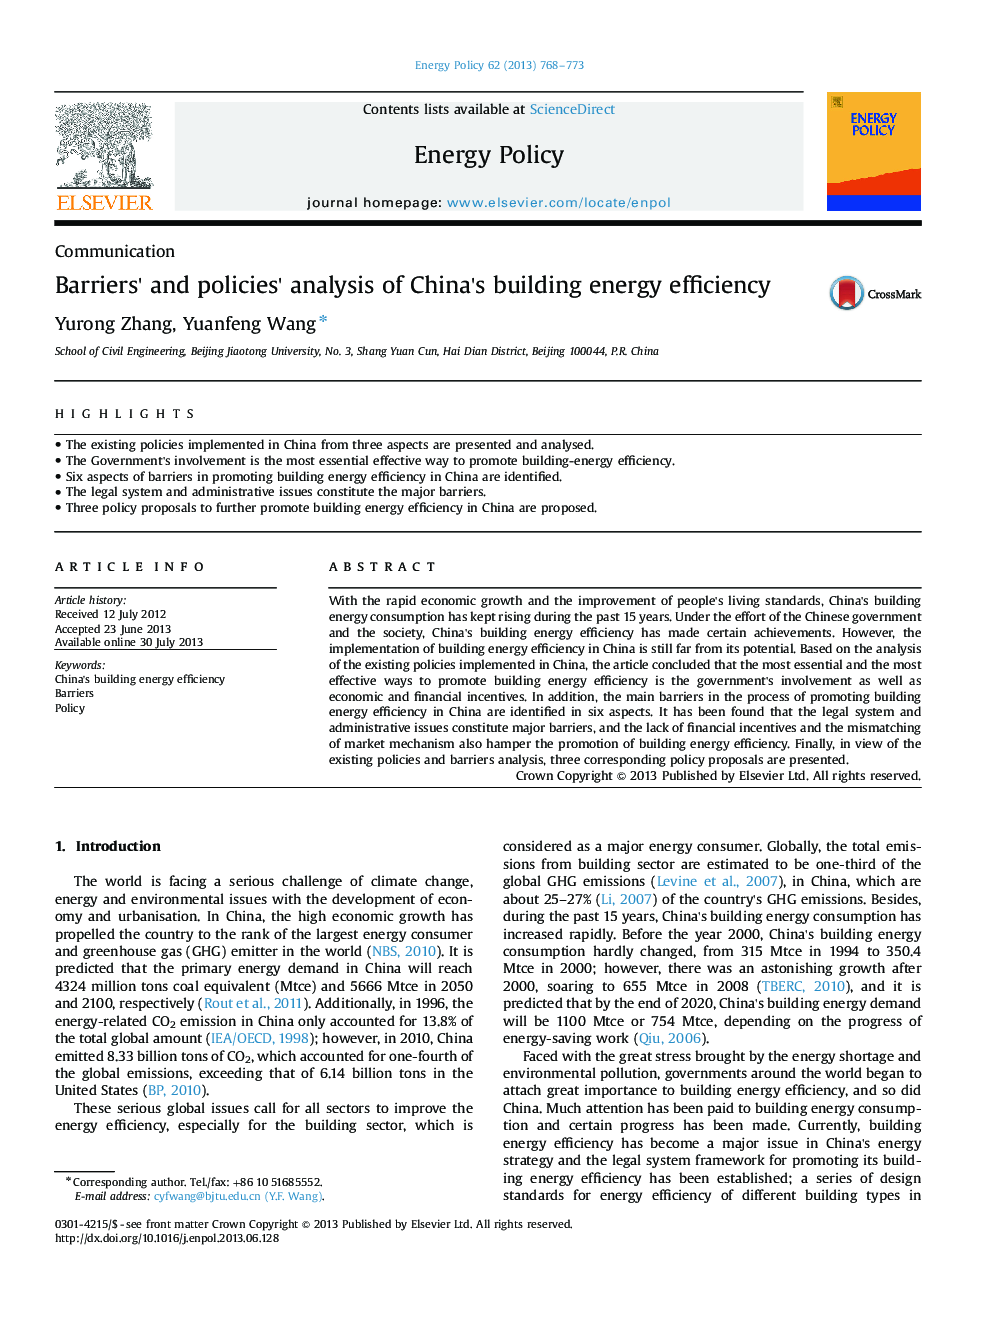 تجزیه و تحلیل موانع و سیاستها از کارایی انرژی ساختمان چین 